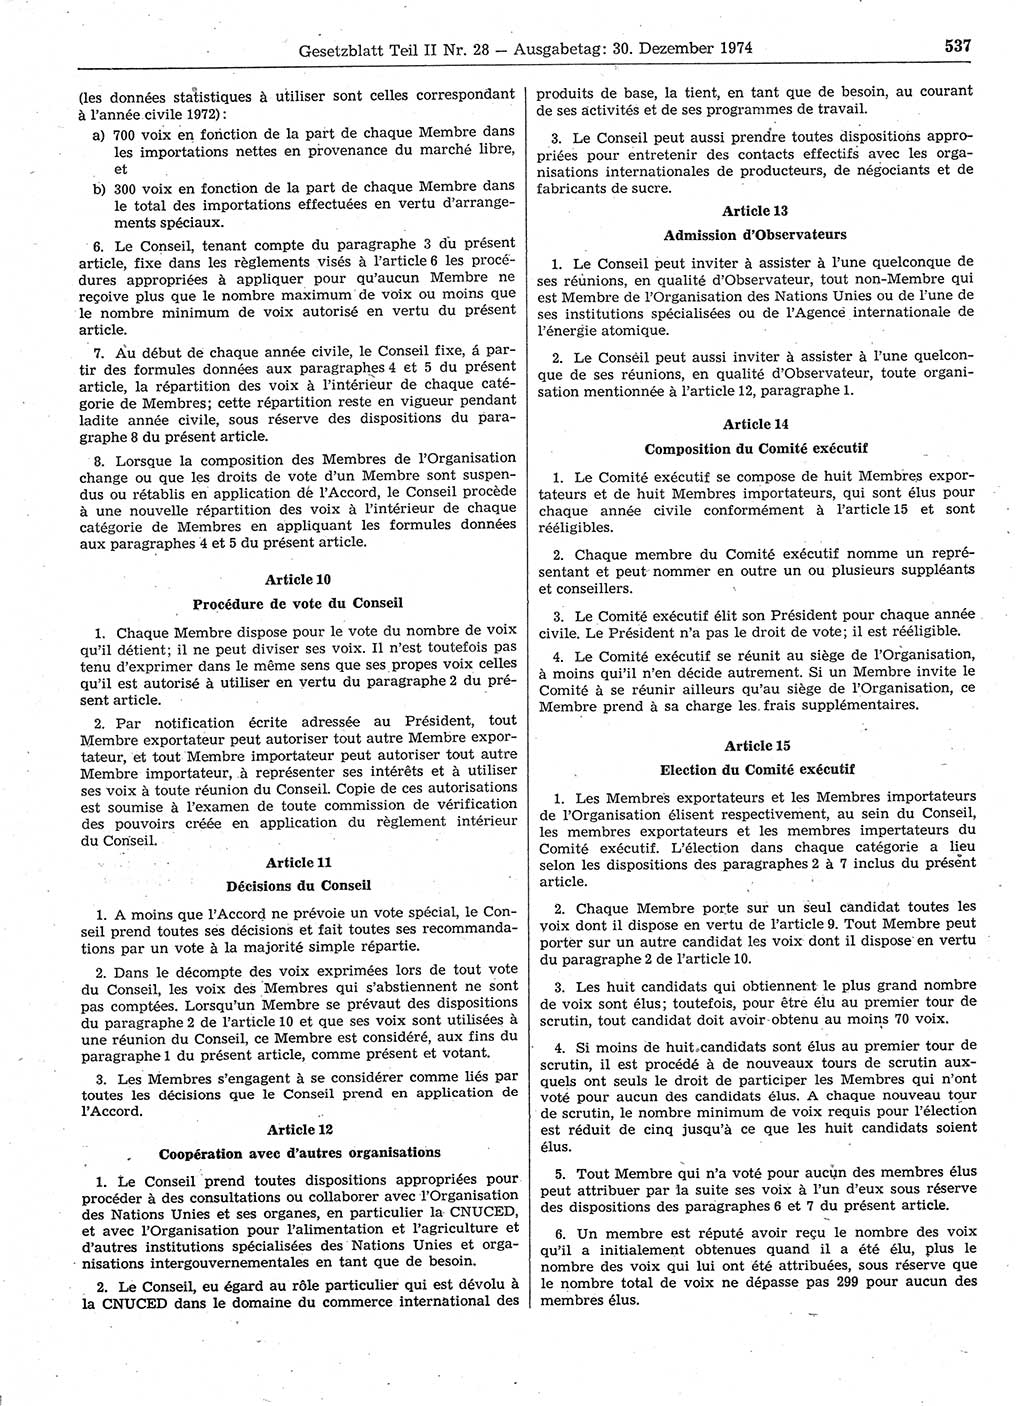 Gesetzblatt (GBl.) der Deutschen Demokratischen Republik (DDR) Teil ⅠⅠ 1974, Seite 537 (GBl. DDR ⅠⅠ 1974, S. 537)